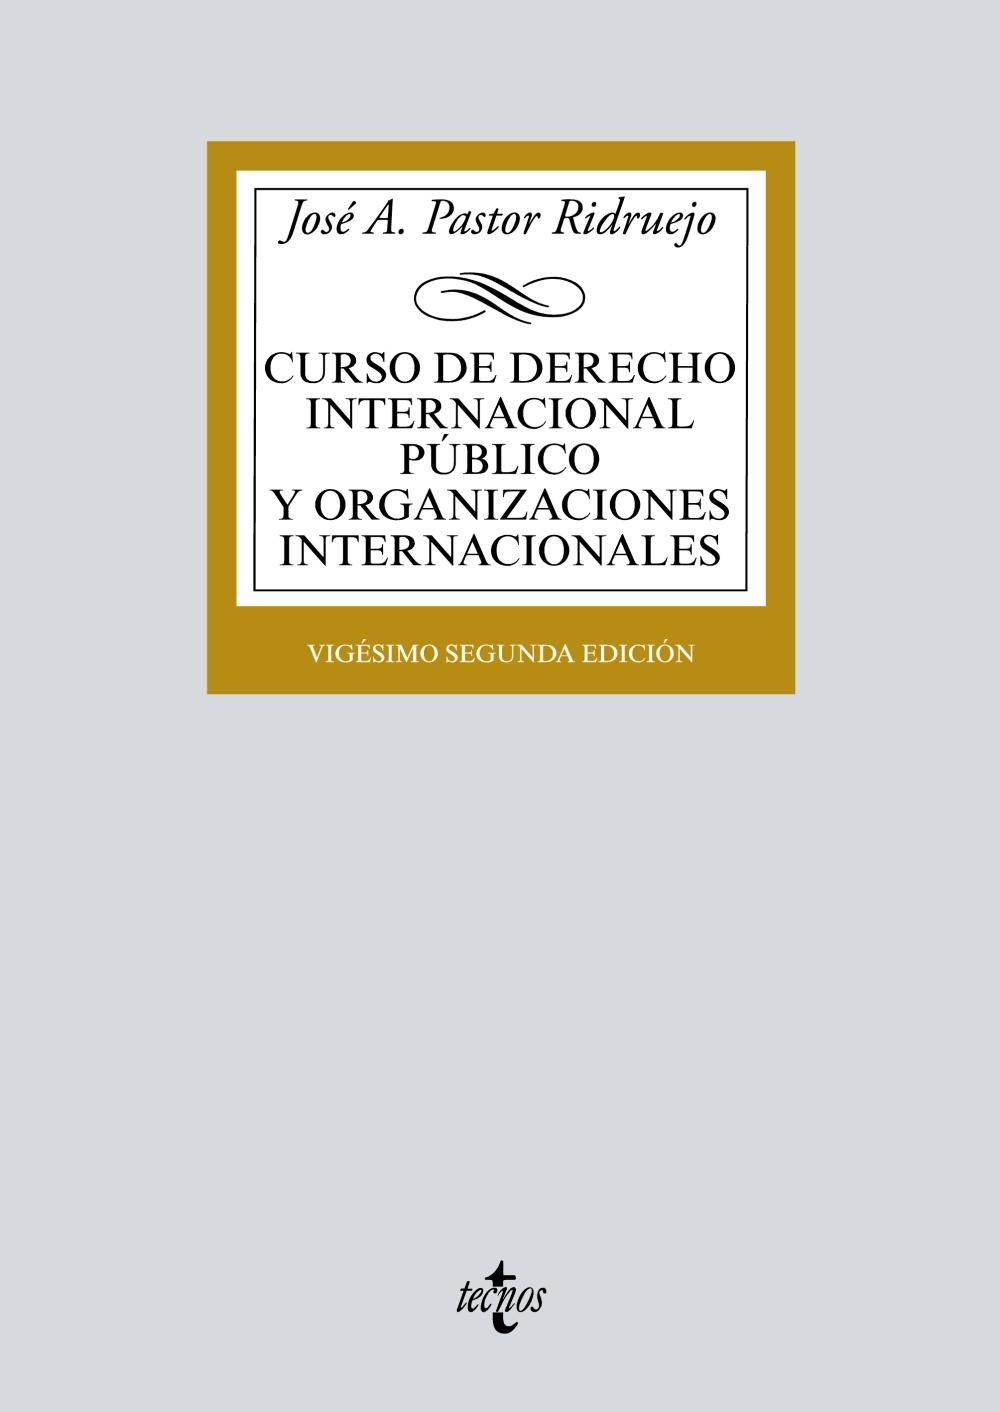 CURSO DE DERECHO INTERNACIONAL PUBLICO Y ORGANIZACIONES INTERNACIONALES